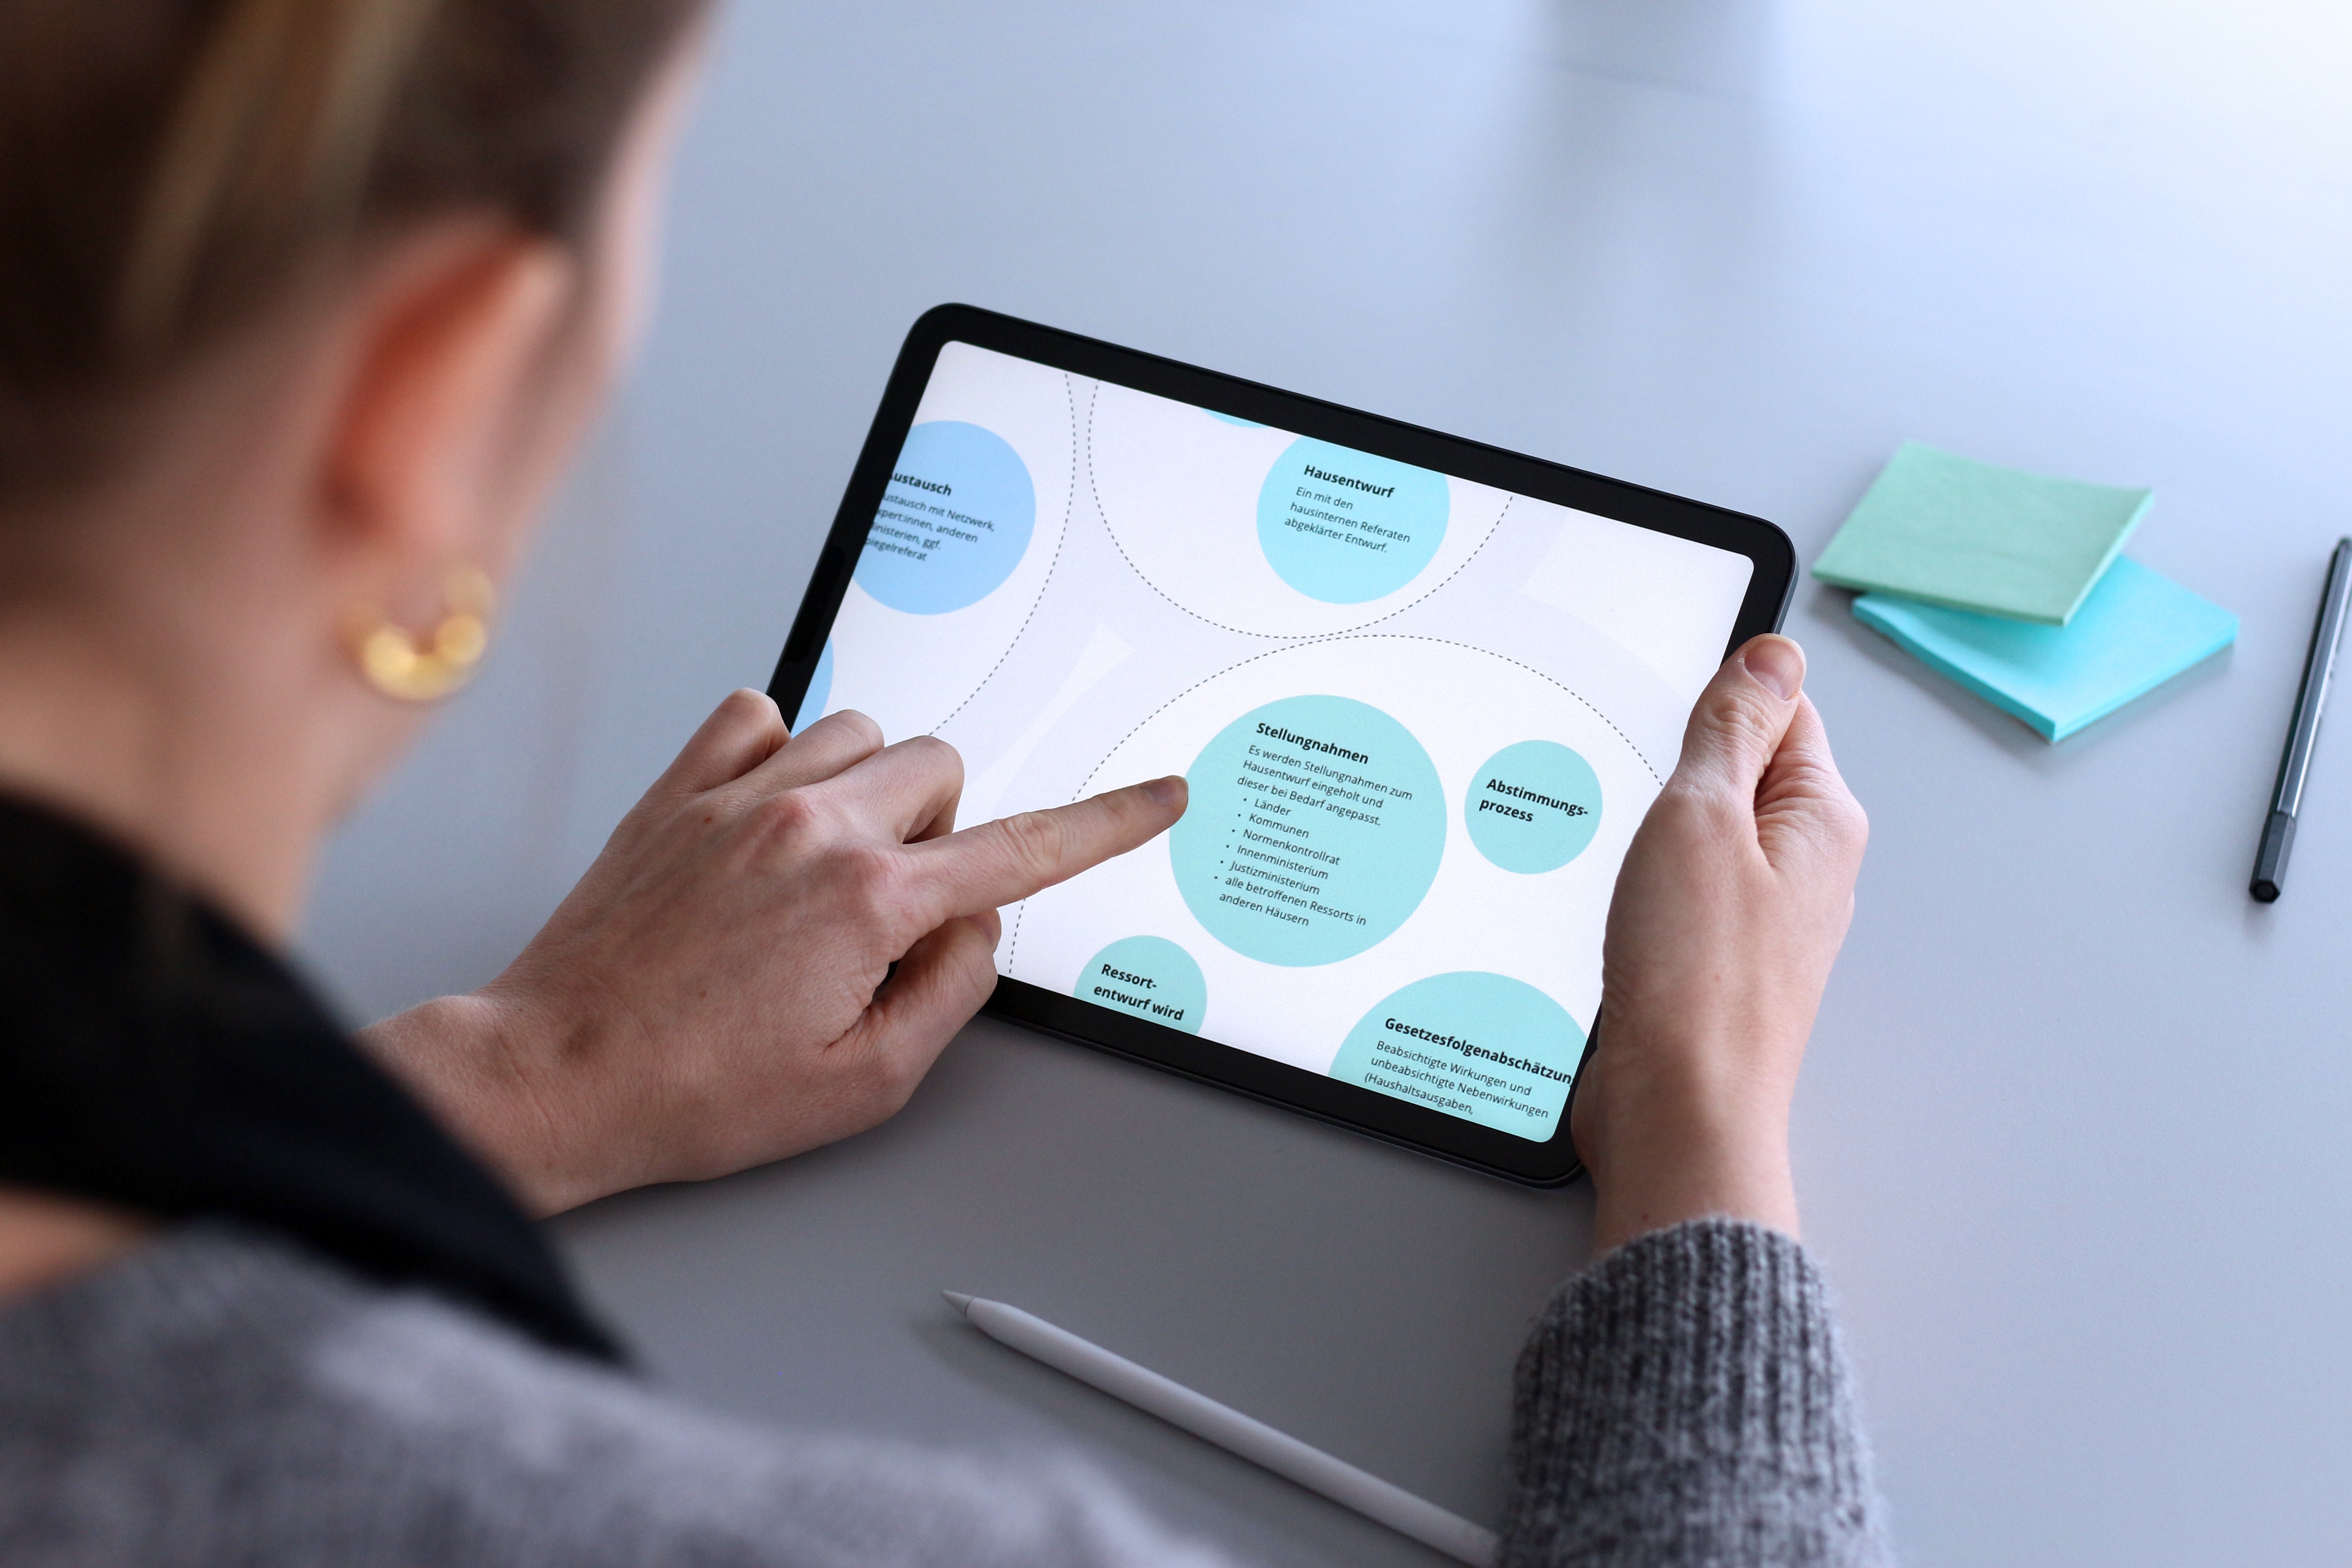 Eine Person hält ein Tablet in der Hand, auf dem ein Teilausschnitt der Digitalcheck Service-Landschaft zu erkennen ist.